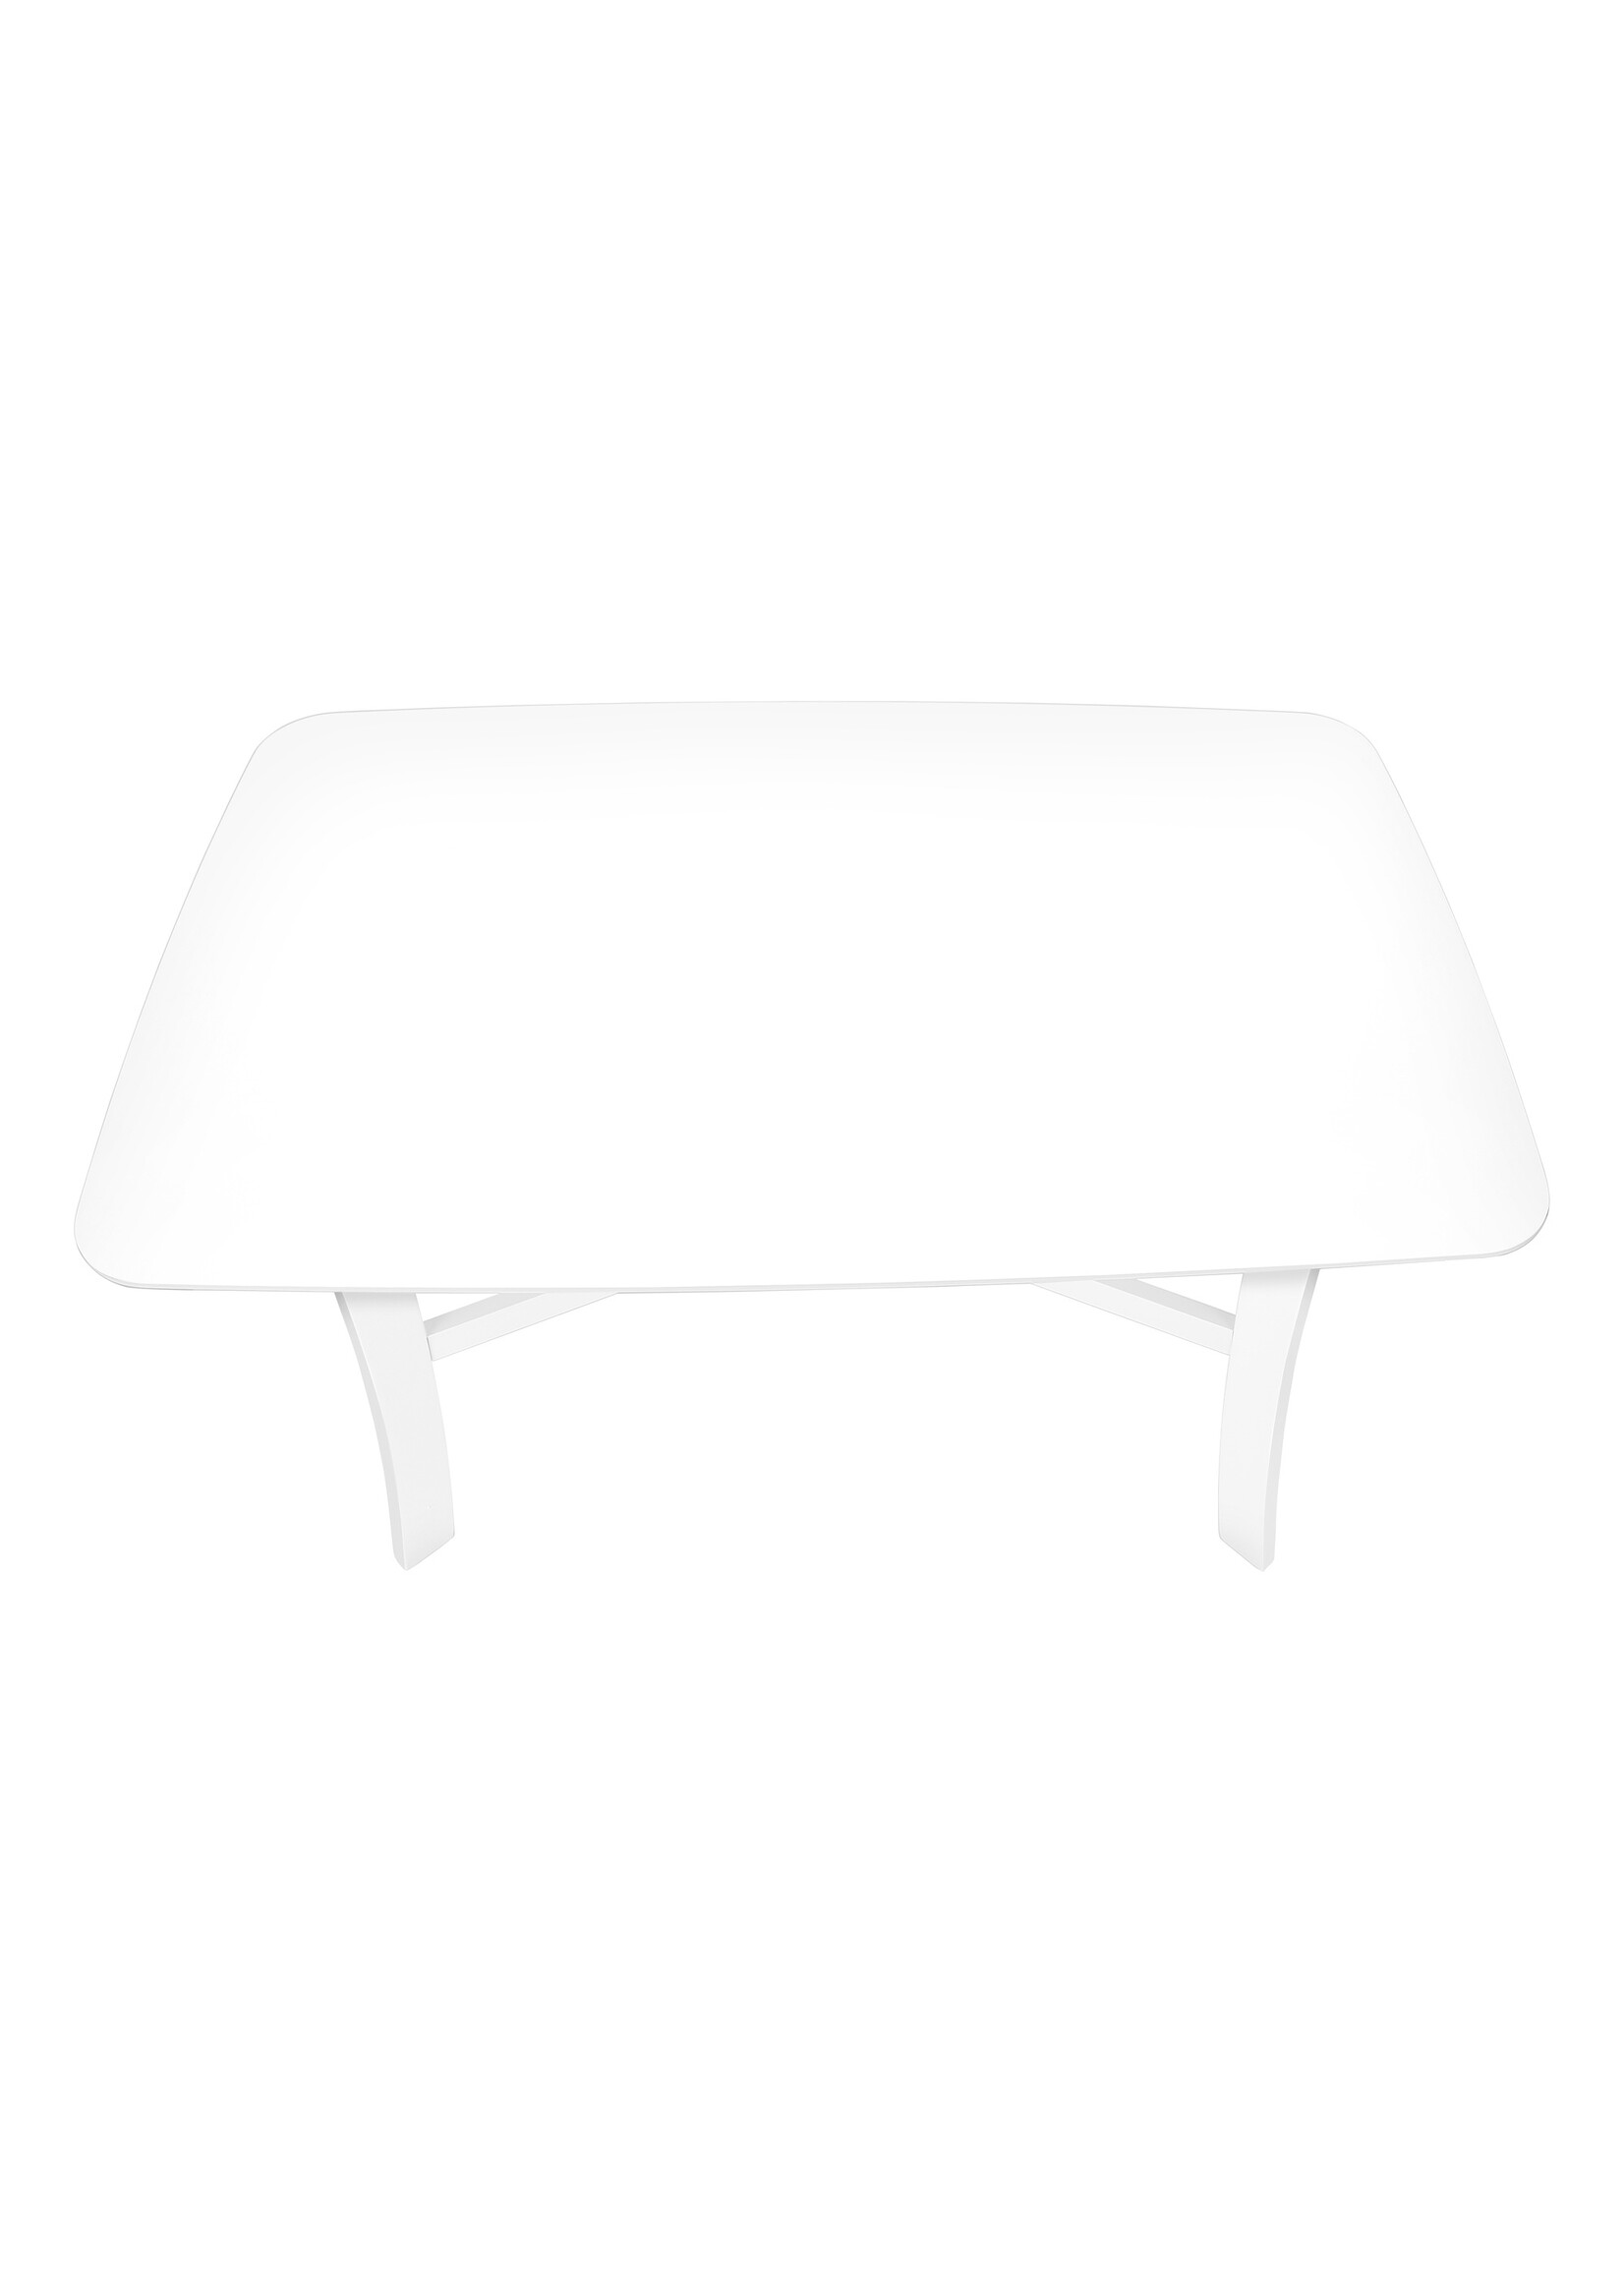 DINING TABLE - 36"X 48" / WHITE VENEER TOP